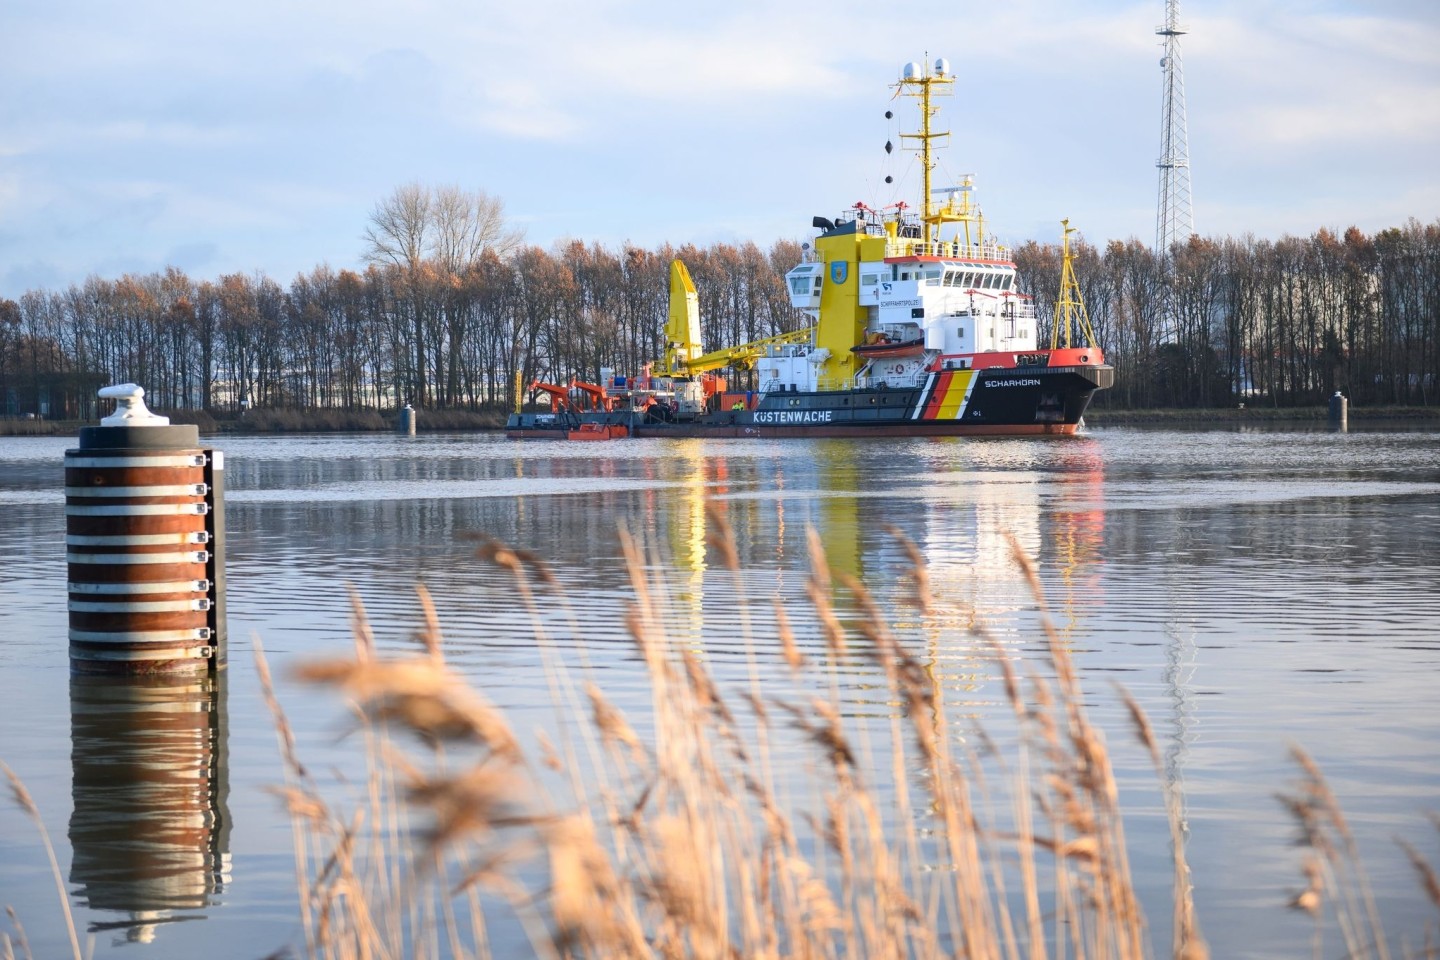 Das Schadstoffunfall-Bekämpfungsschiff Scharhörn fährt über das Wasser um das Öl aufzunehmen.